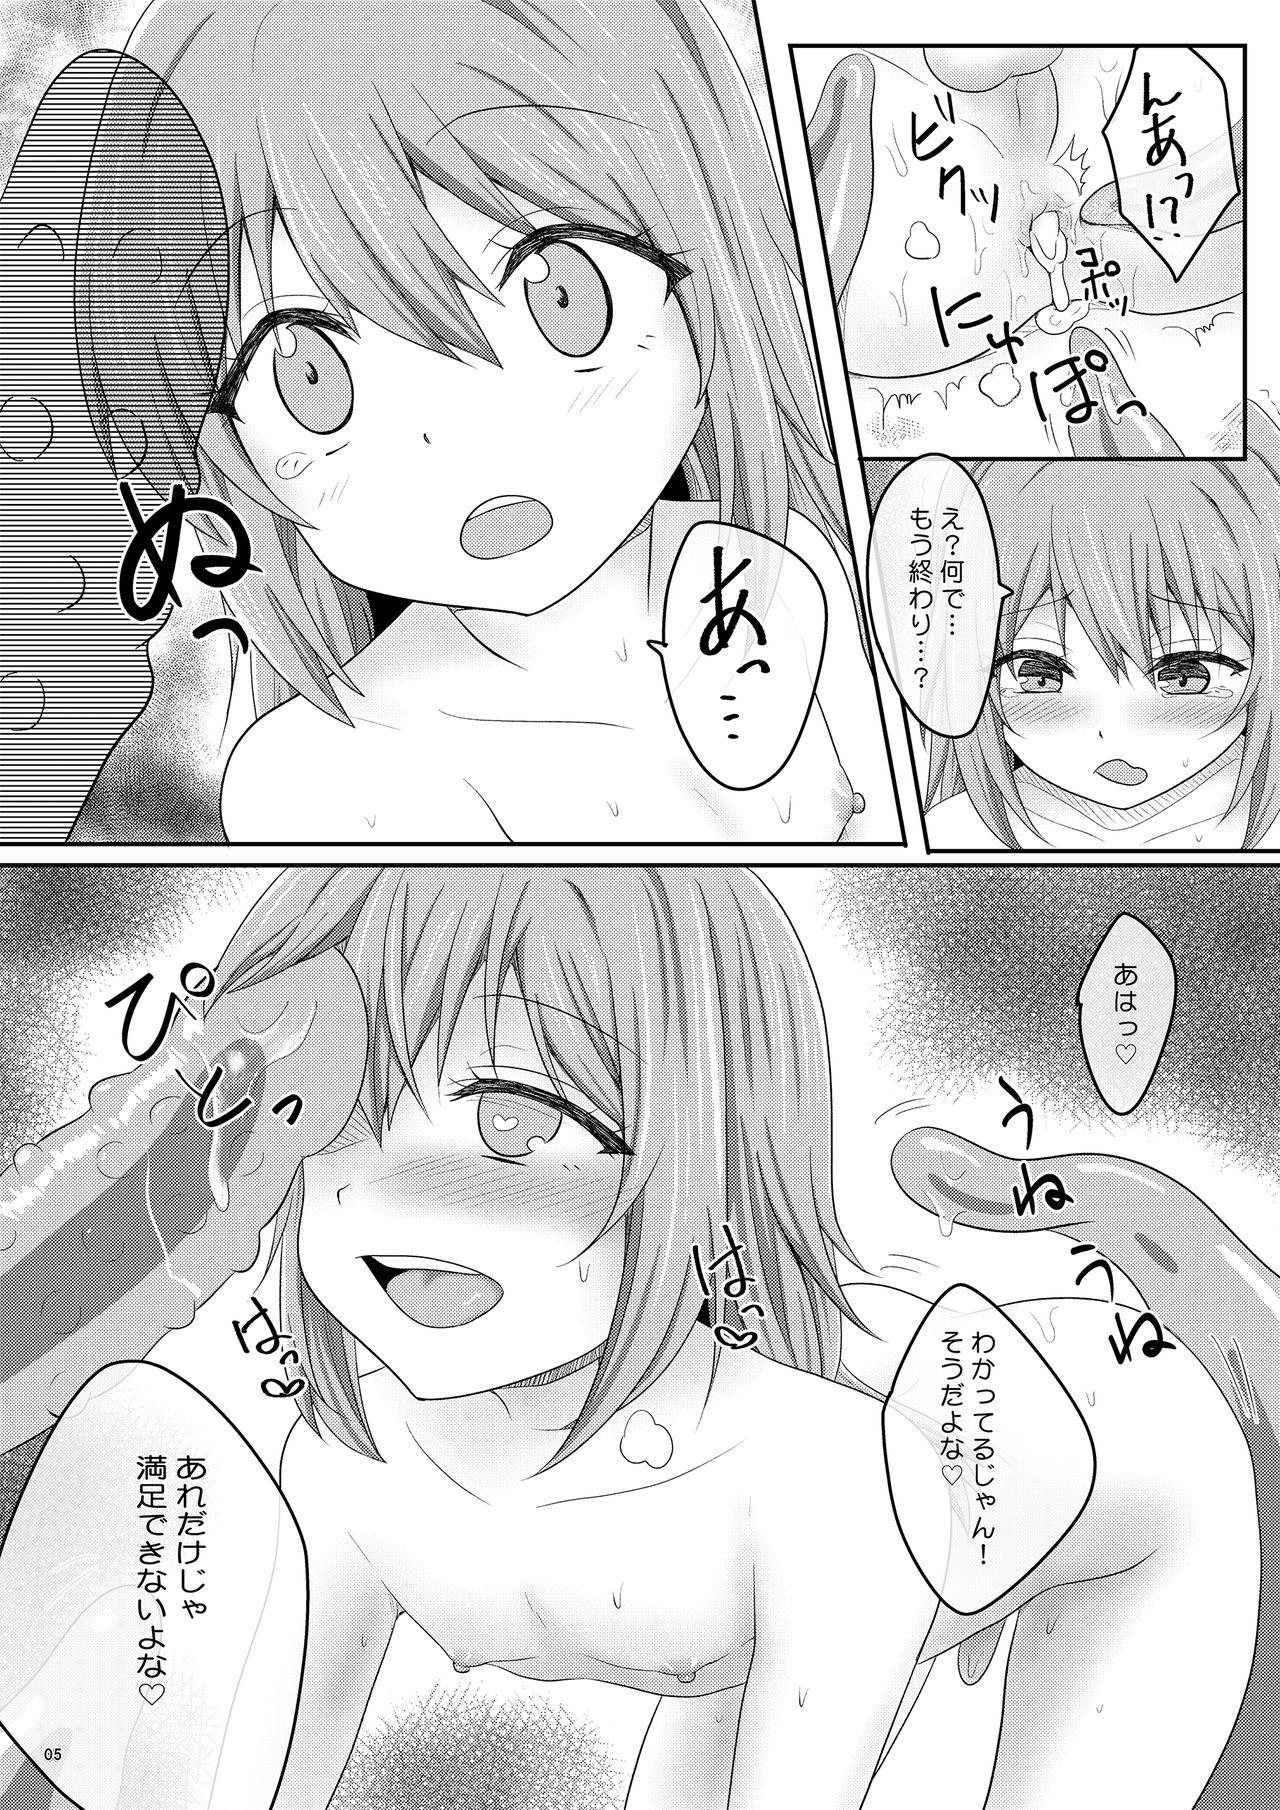 Red Head Ero Manga de Mita You na Shokushu H ga Shite Mitai - Tensei shitara slime datta ken Ladyboy - Page 5